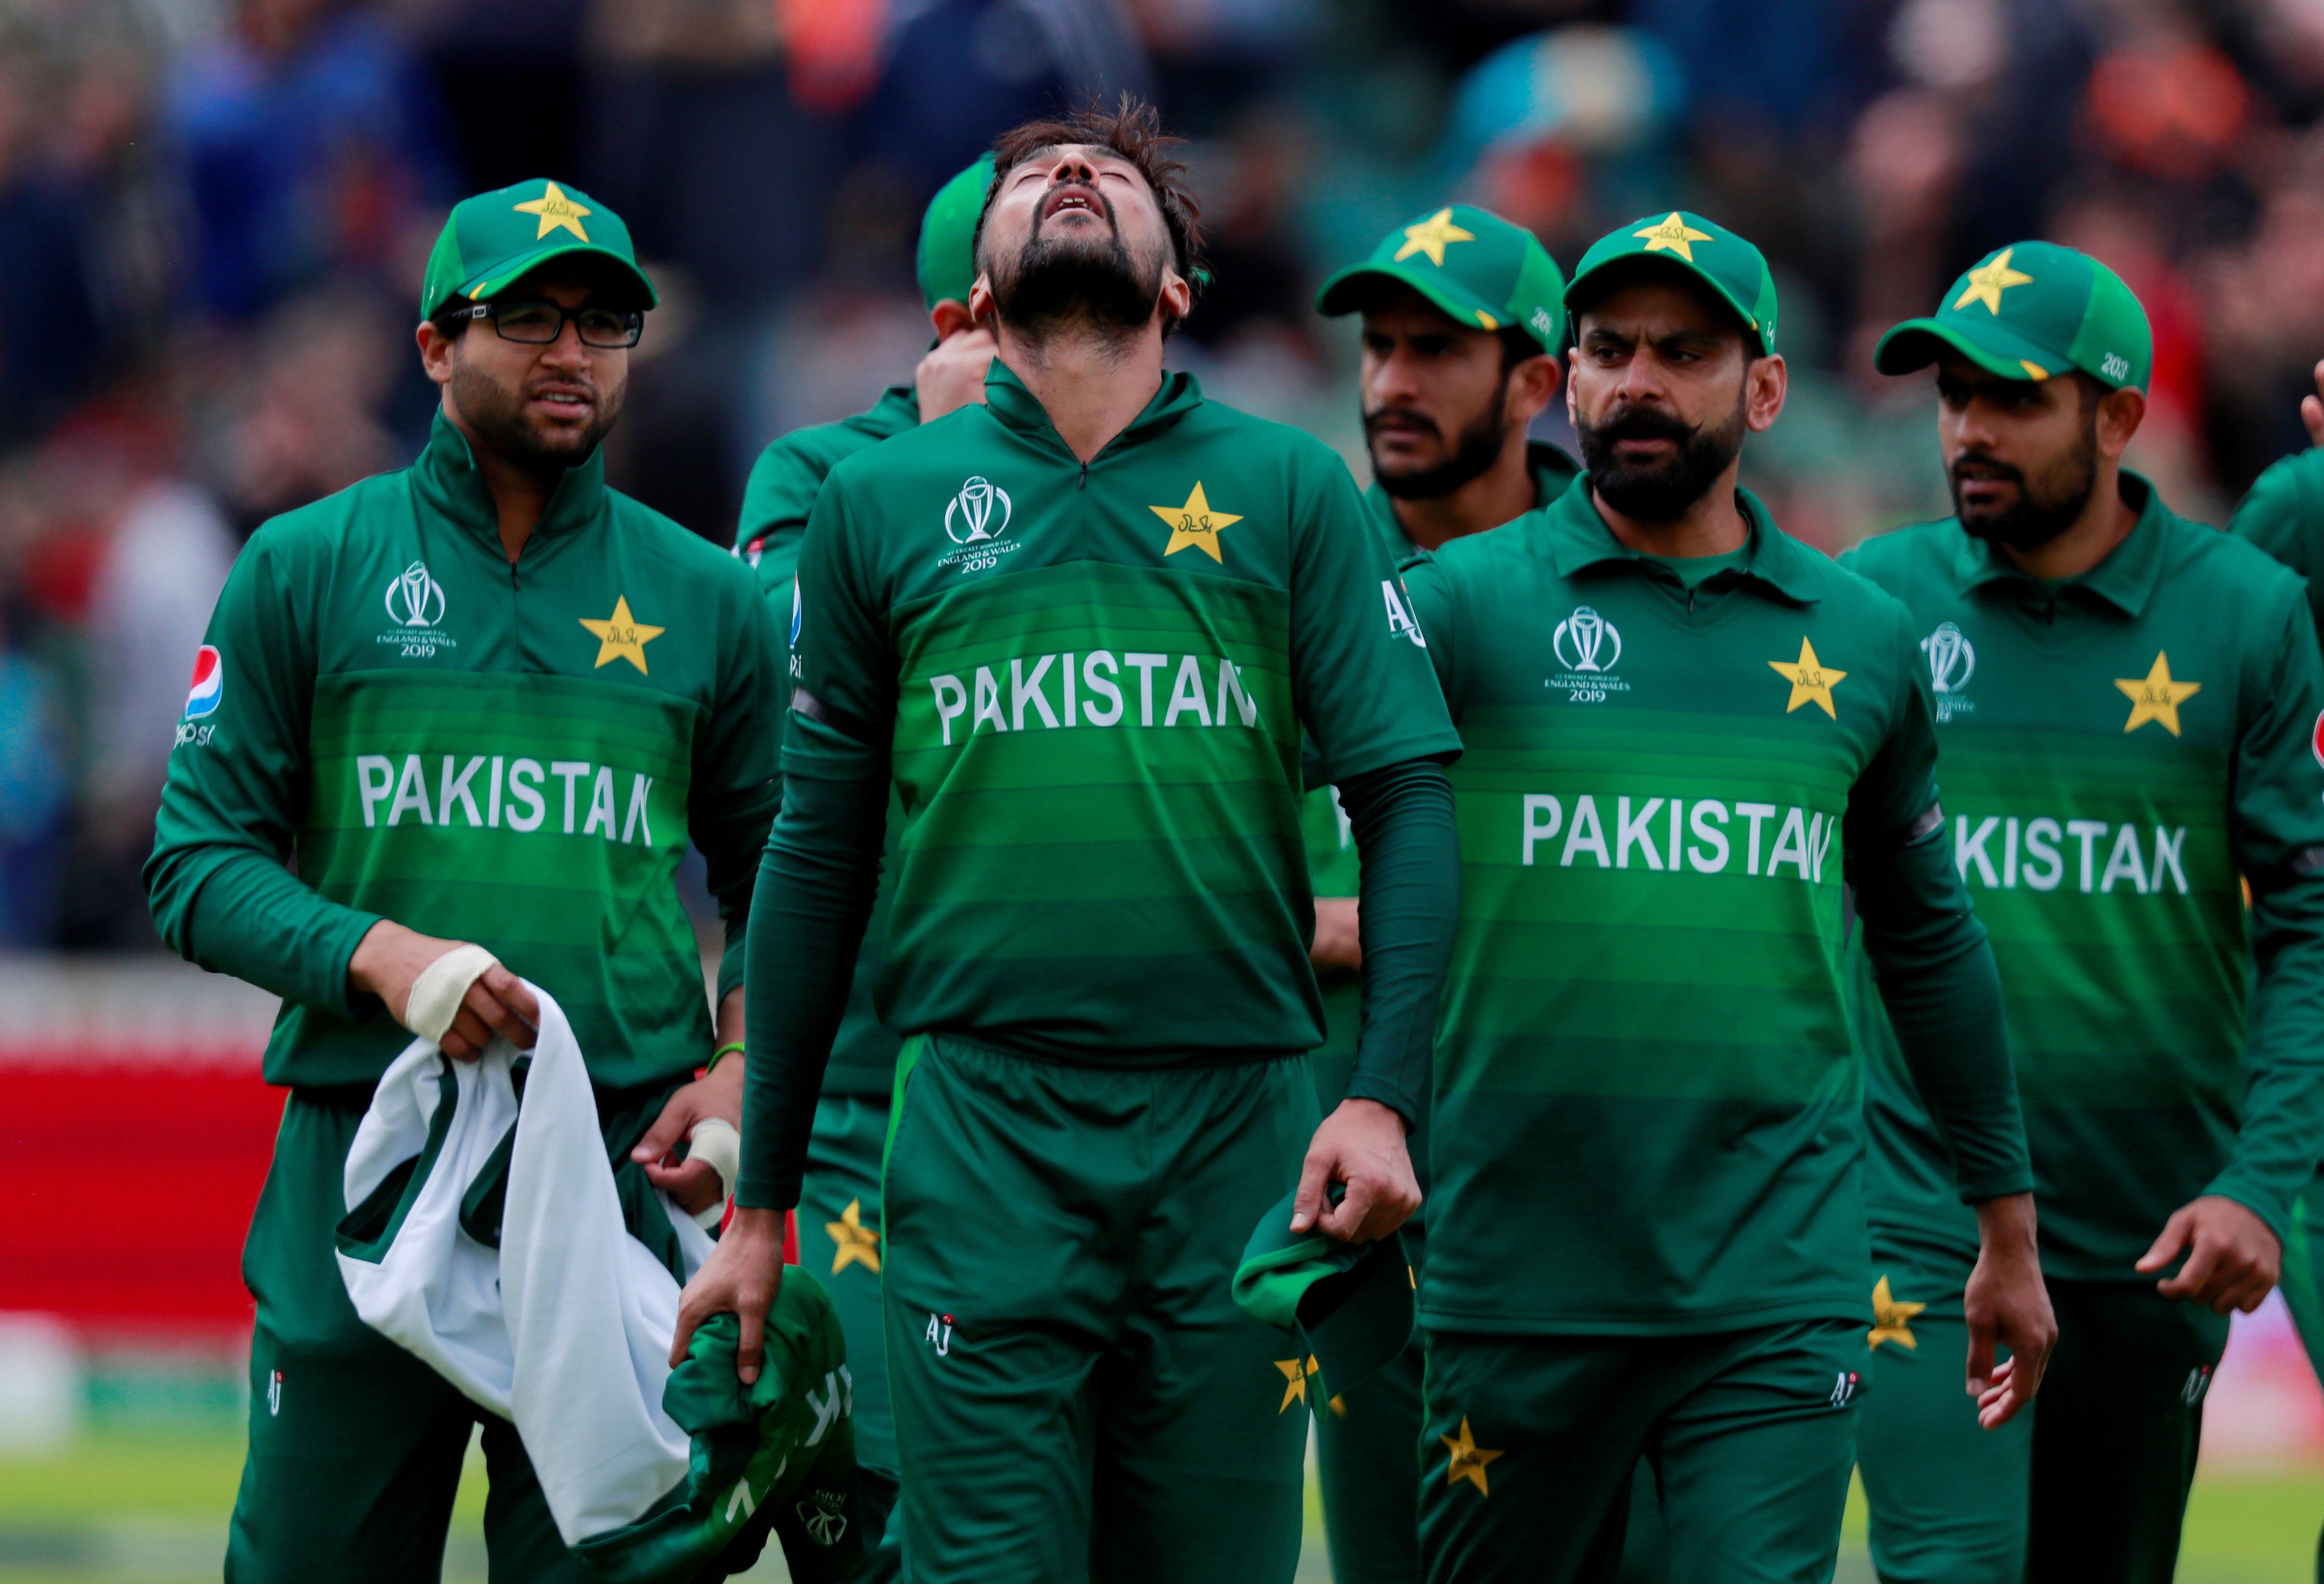 Australia vs Pakistan Live Cricket Score, World Cup 2019 In Pictures: AUS vs PAK Live ...